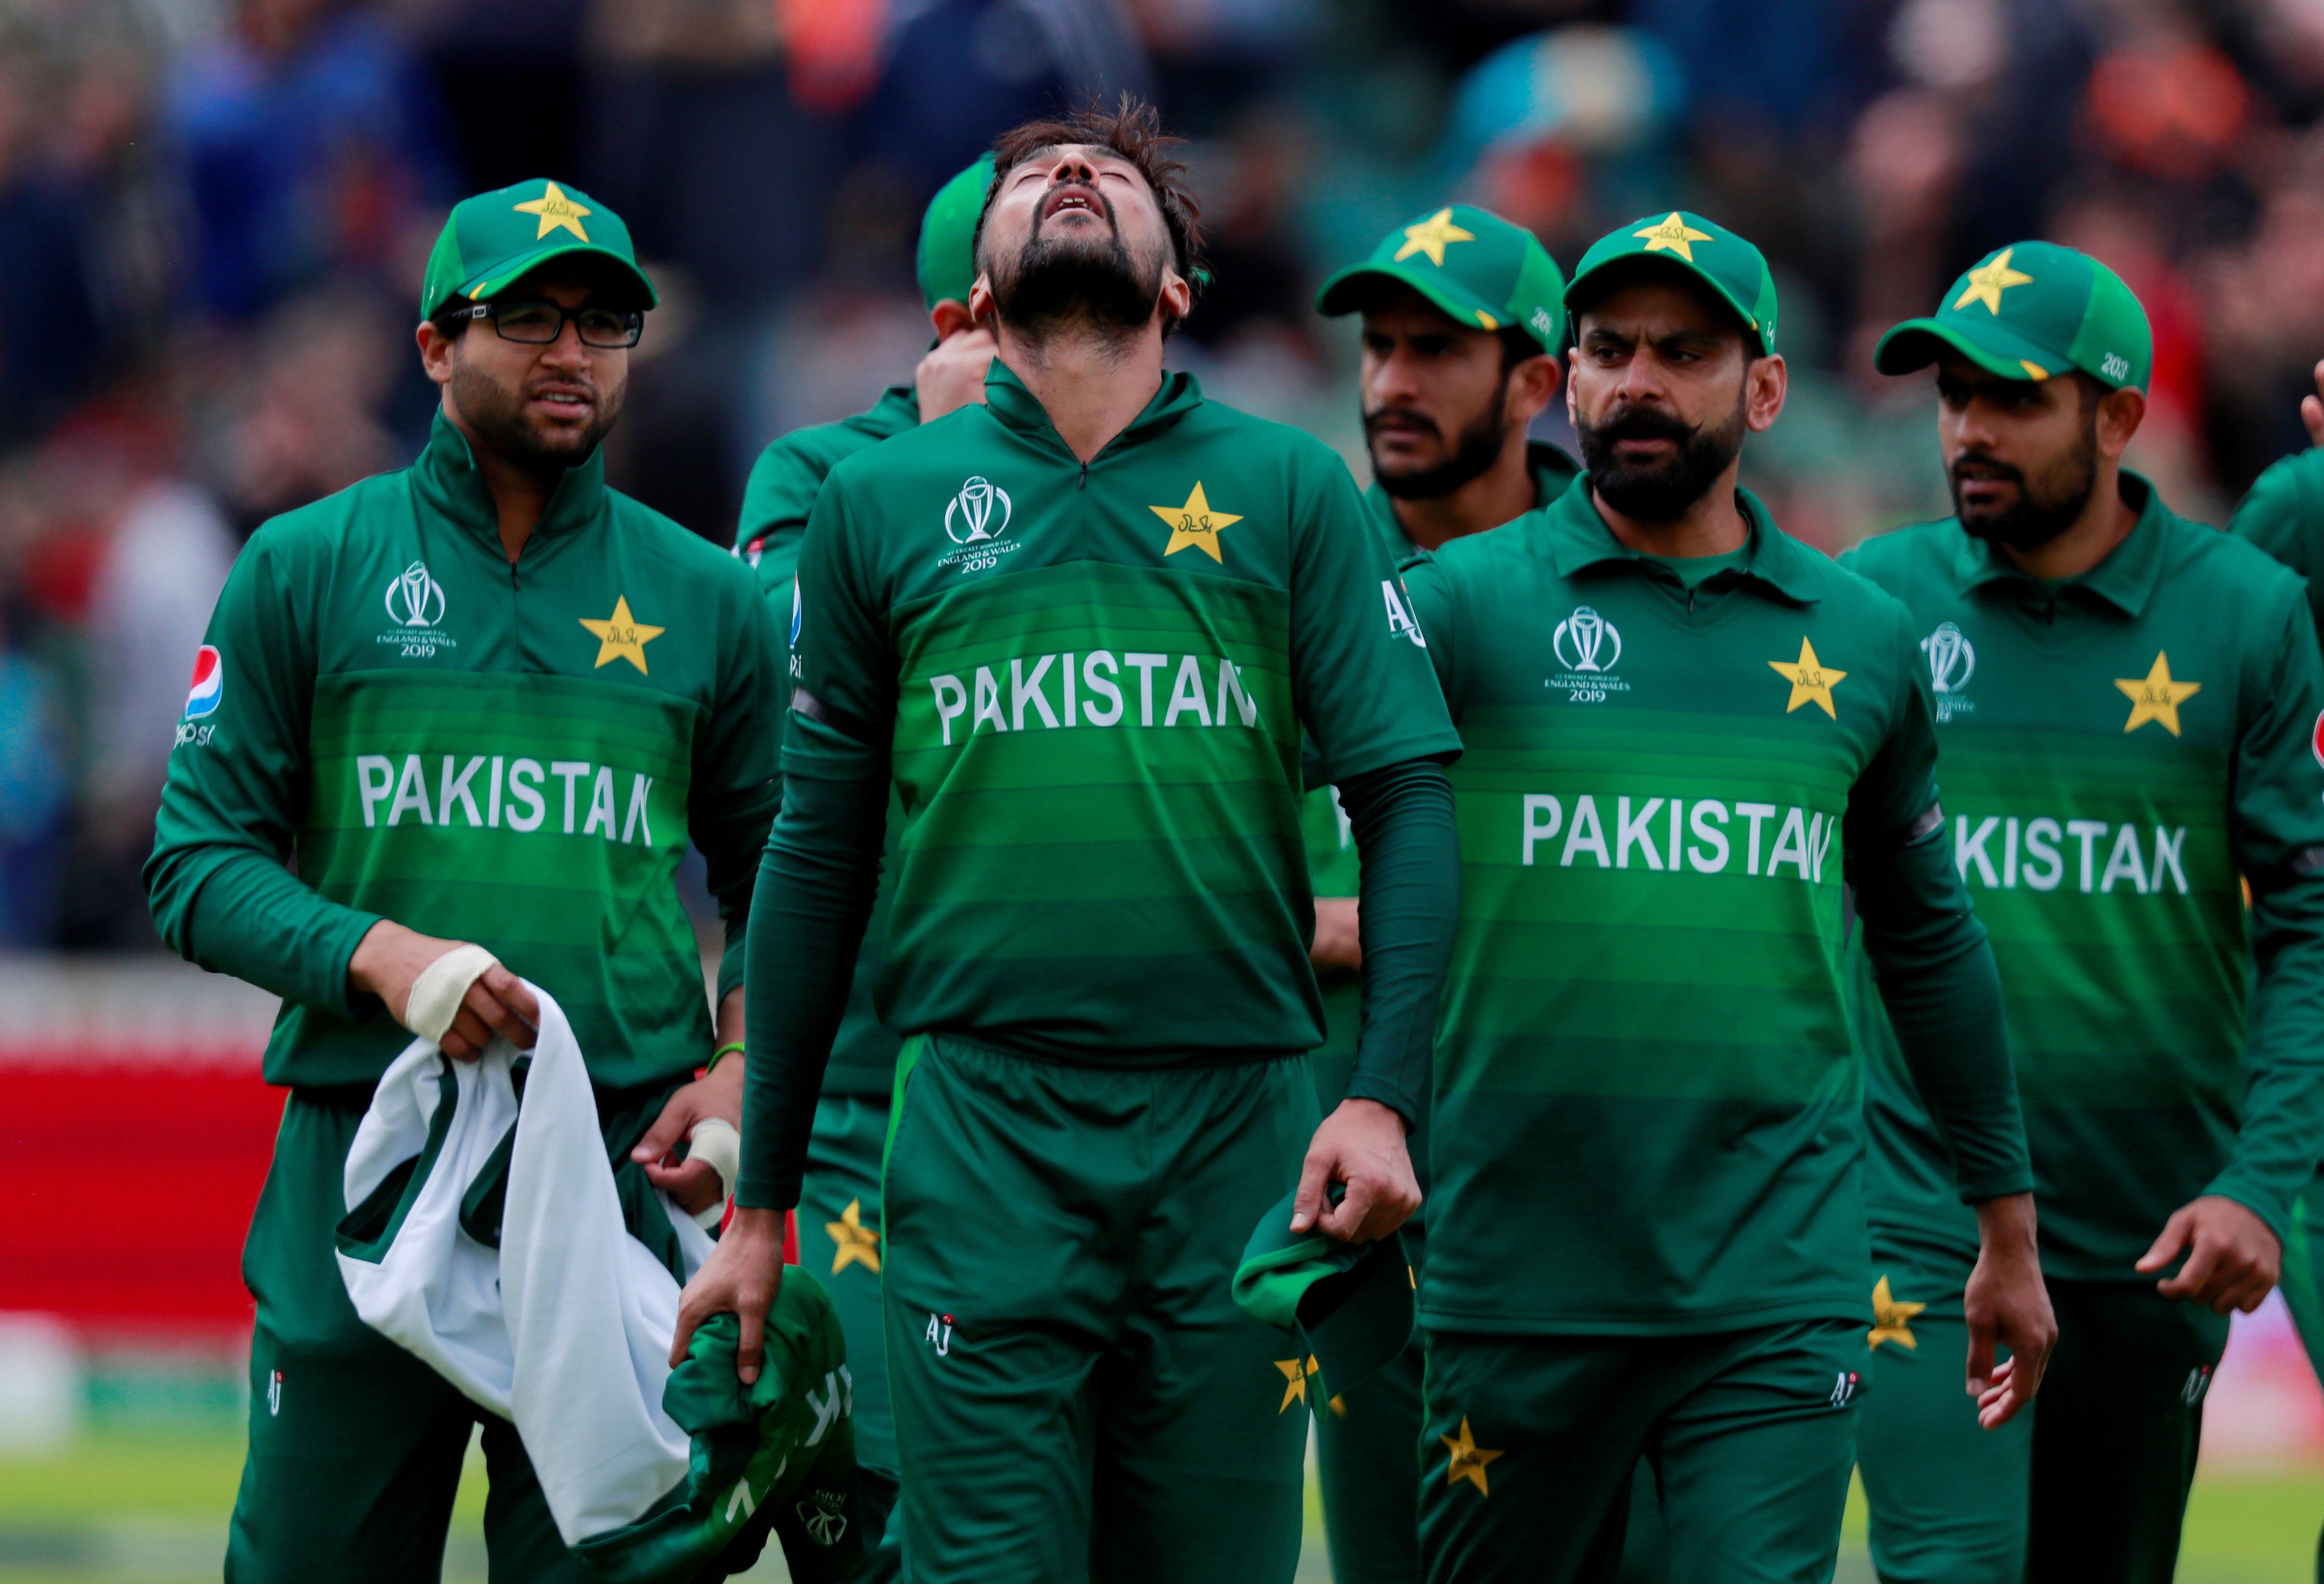 Australia vs Pakistan Live Cricket Score, World Cup 2019 In Pictures: AUS vs PAK Live ...